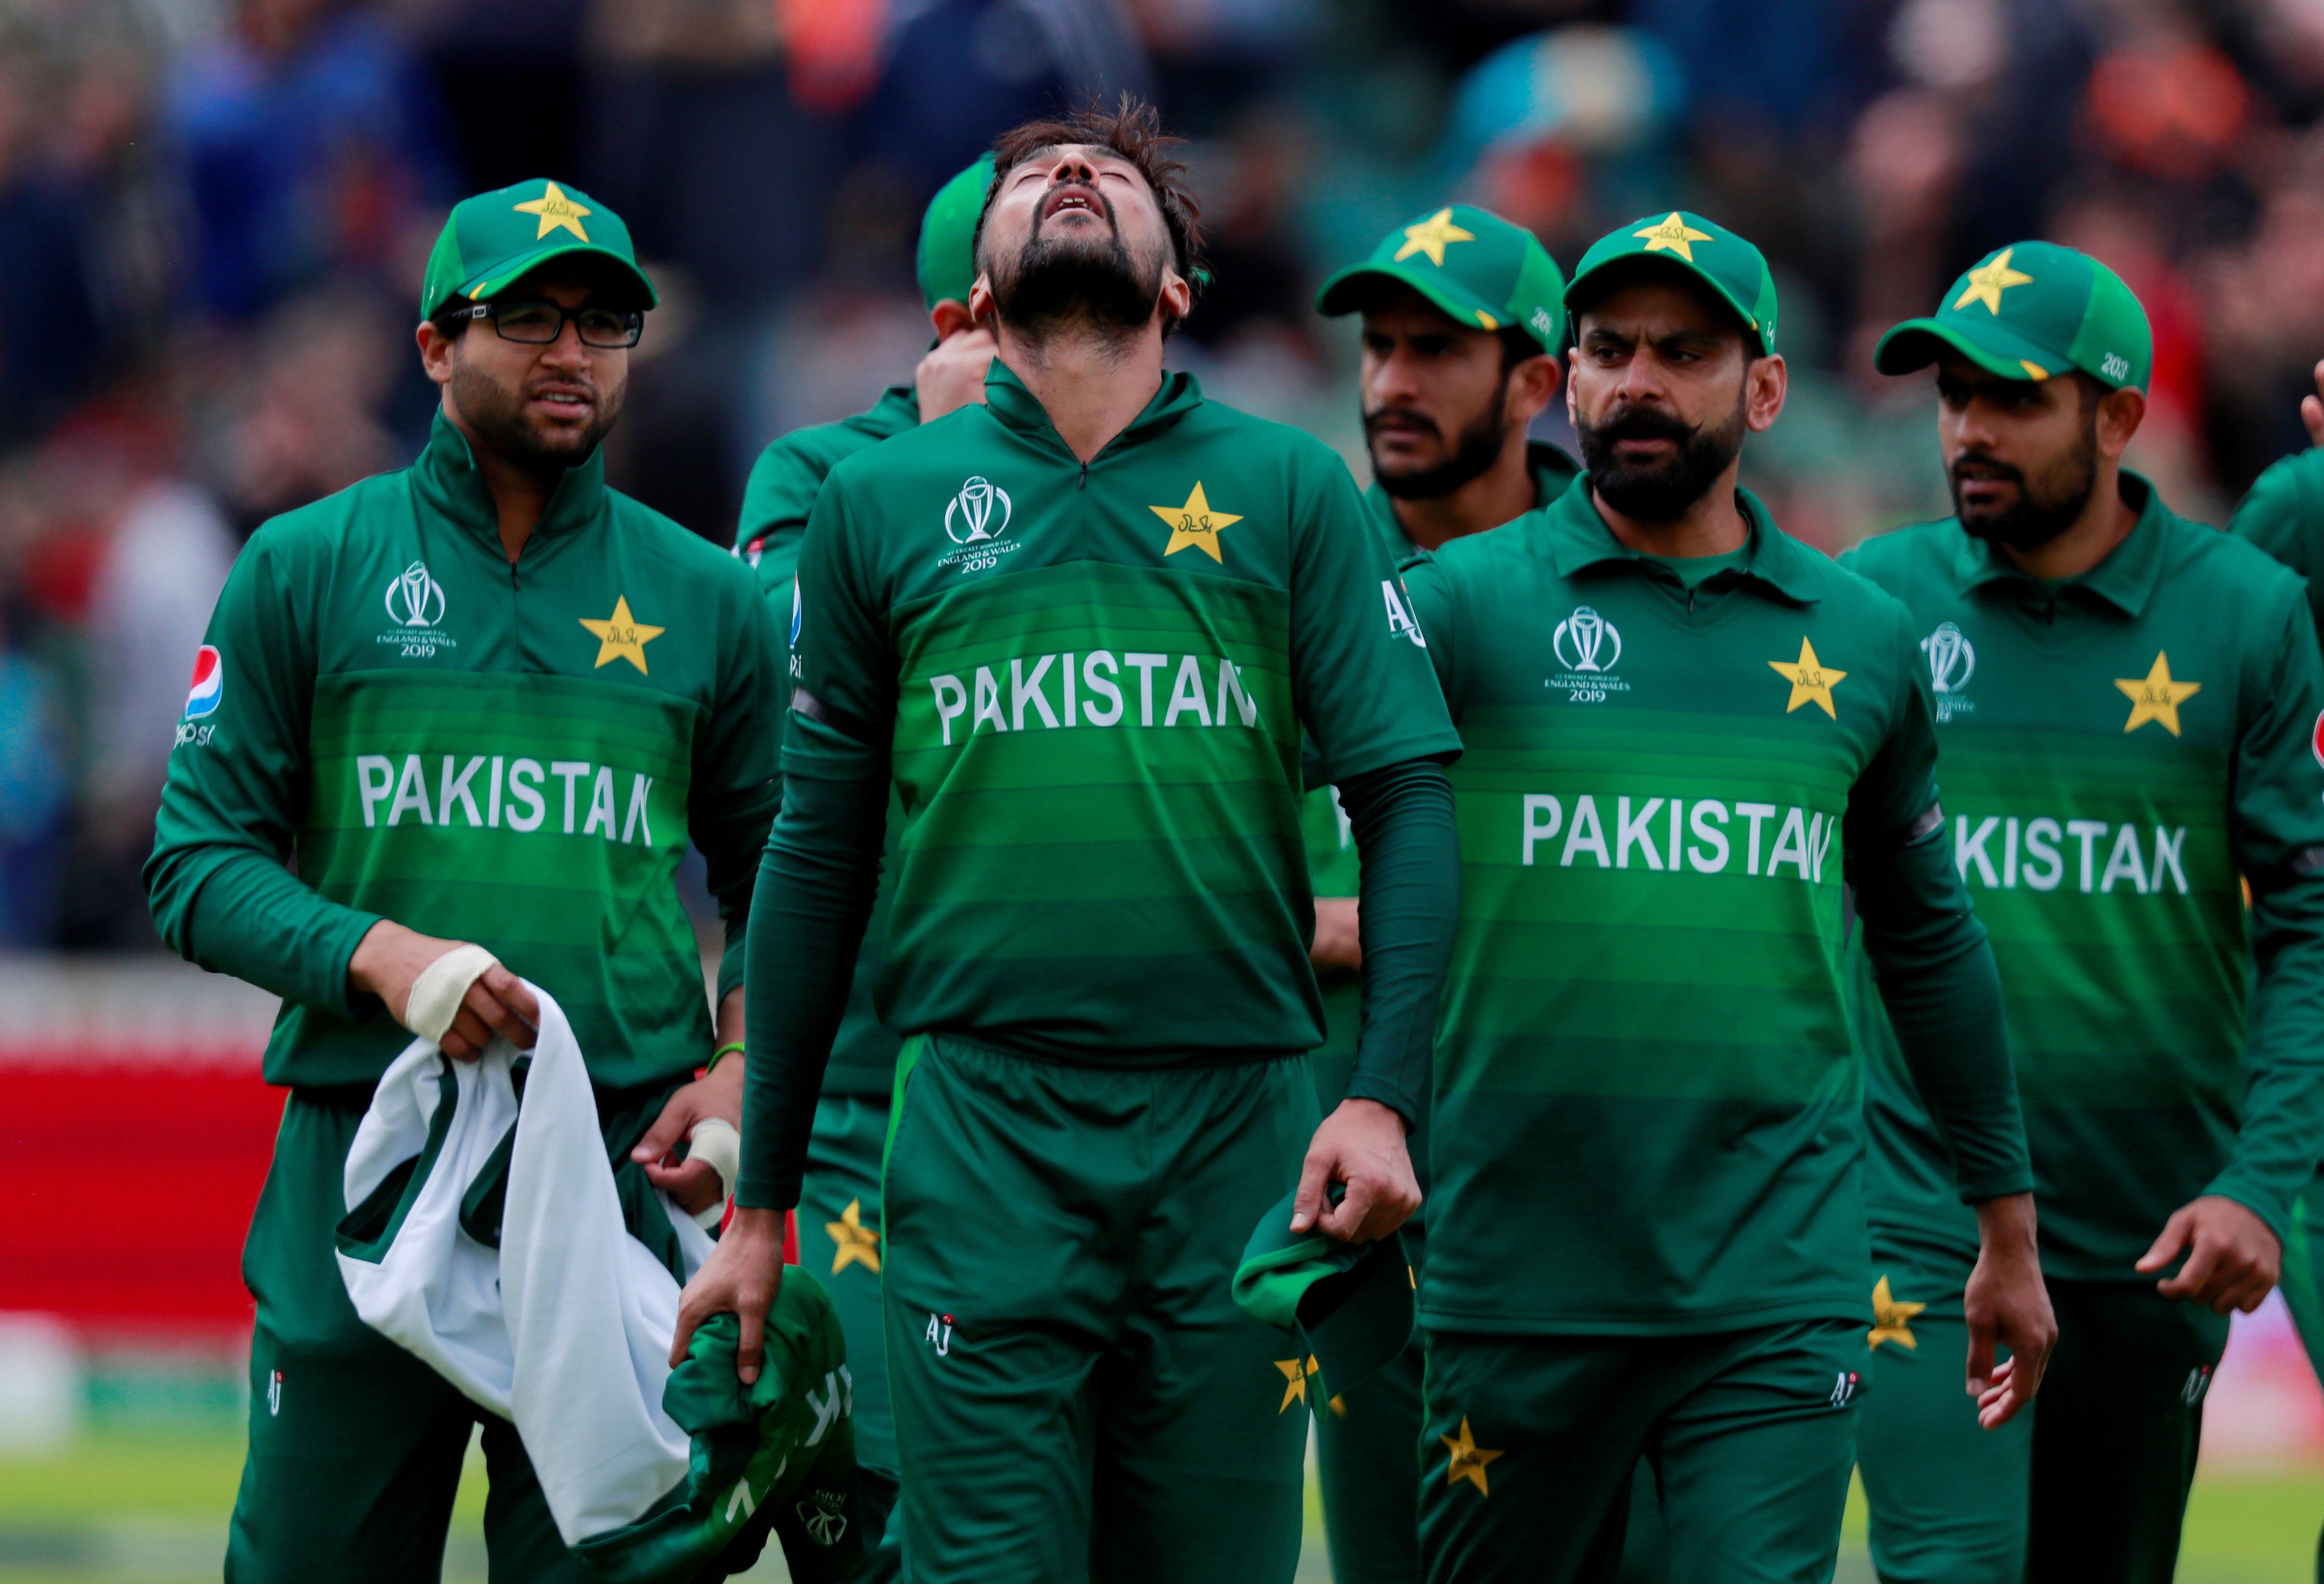 Australia vs Pakistan Live Cricket Score, World Cup 2019 In Pictures: AUS vs PAK Live ...